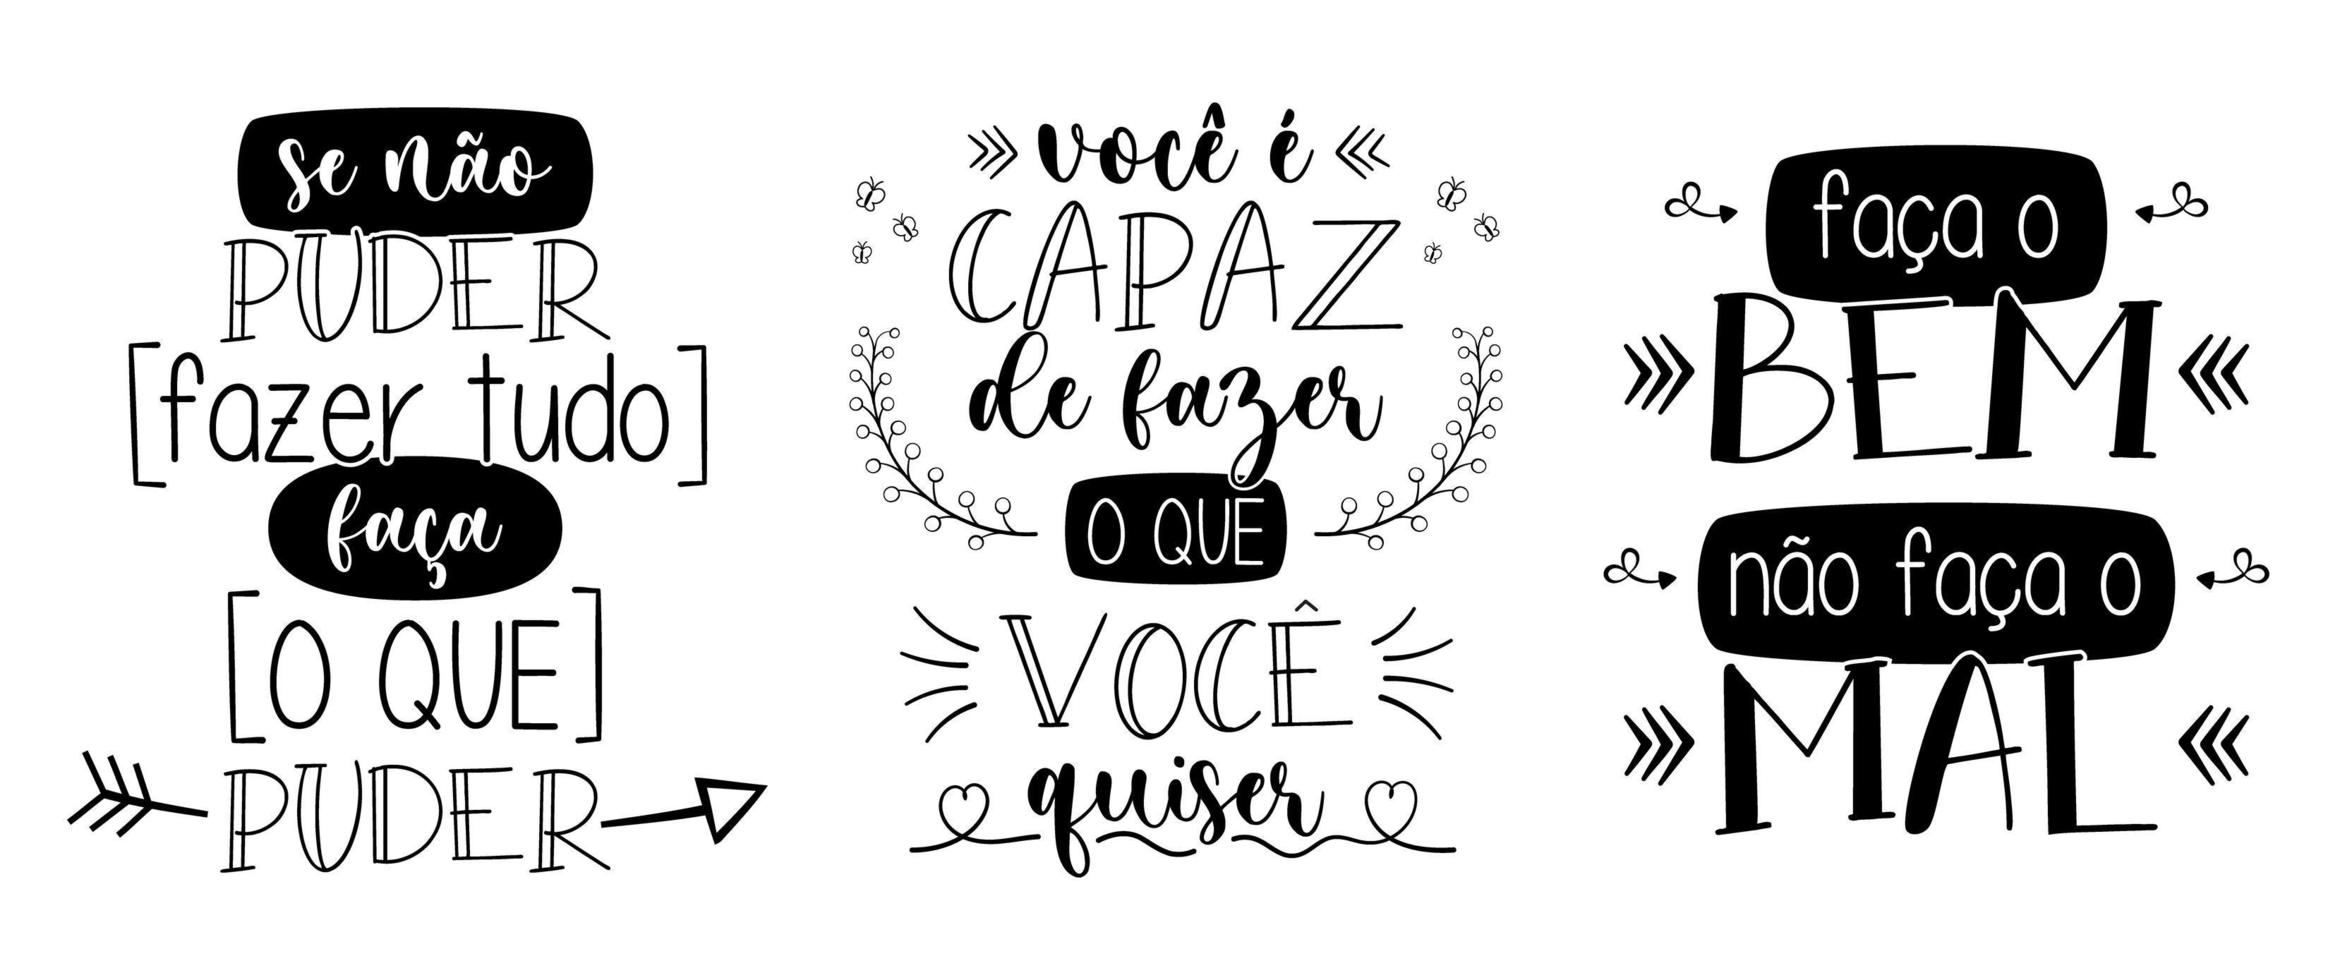 trois phrases inspirantes en portugais brésilien. traduction - si vous ne pouvez pas tout faire, faites ce que vous pouvez - vous êtes capable de faire ce que vous voulez - faites le bien, ne faites pas le mal. vecteur